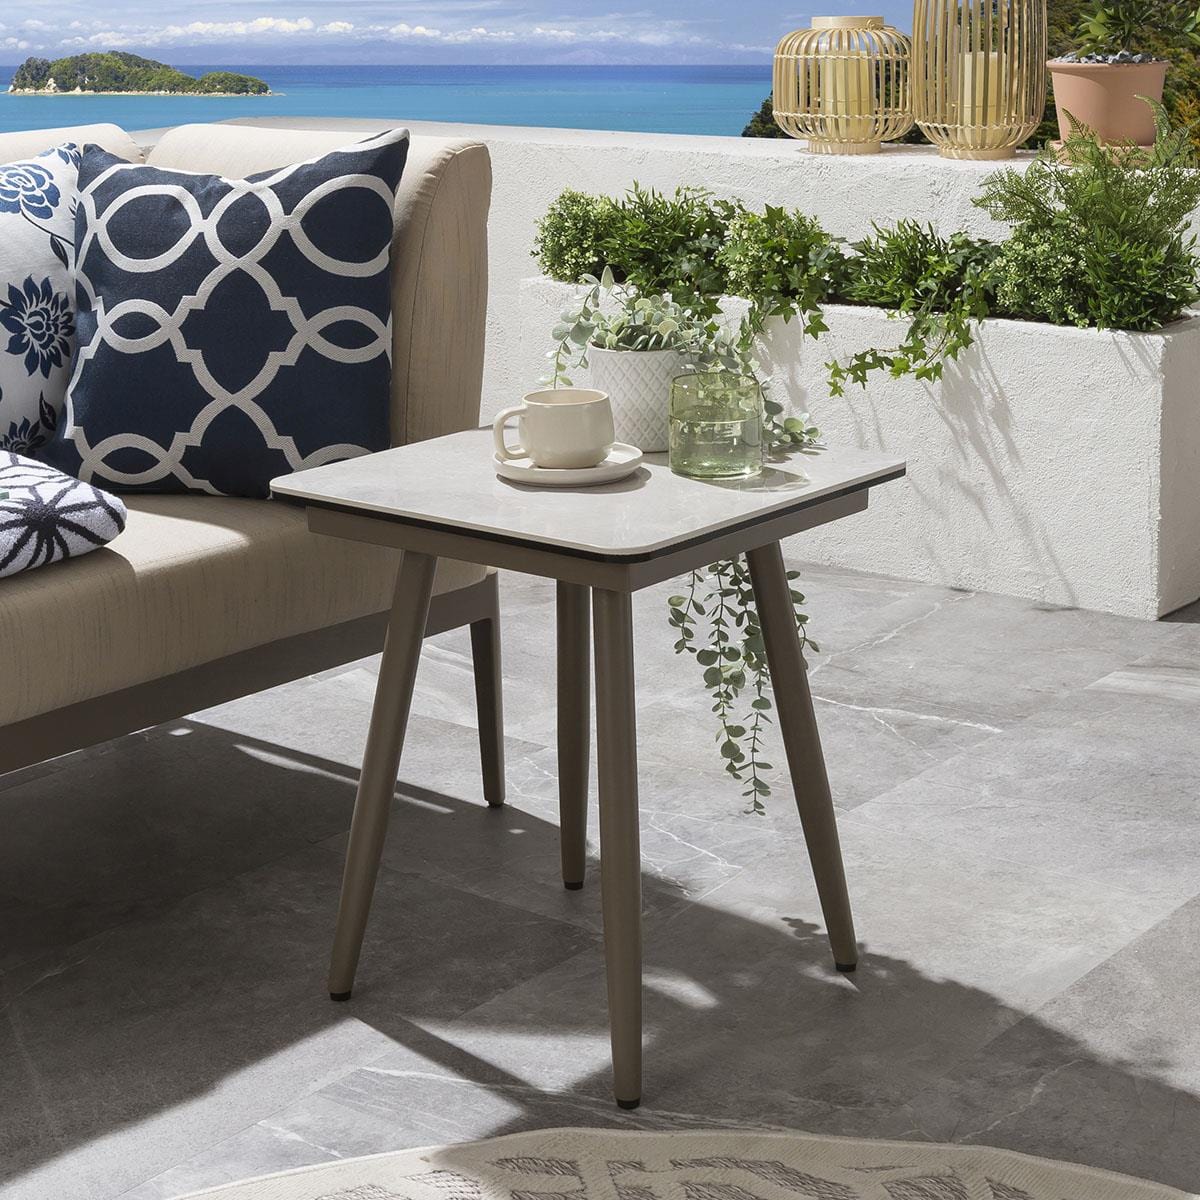 Quatropi Premium Garden Side Table | Aluminium & Grey Ceramic Top 45cm × 45cm